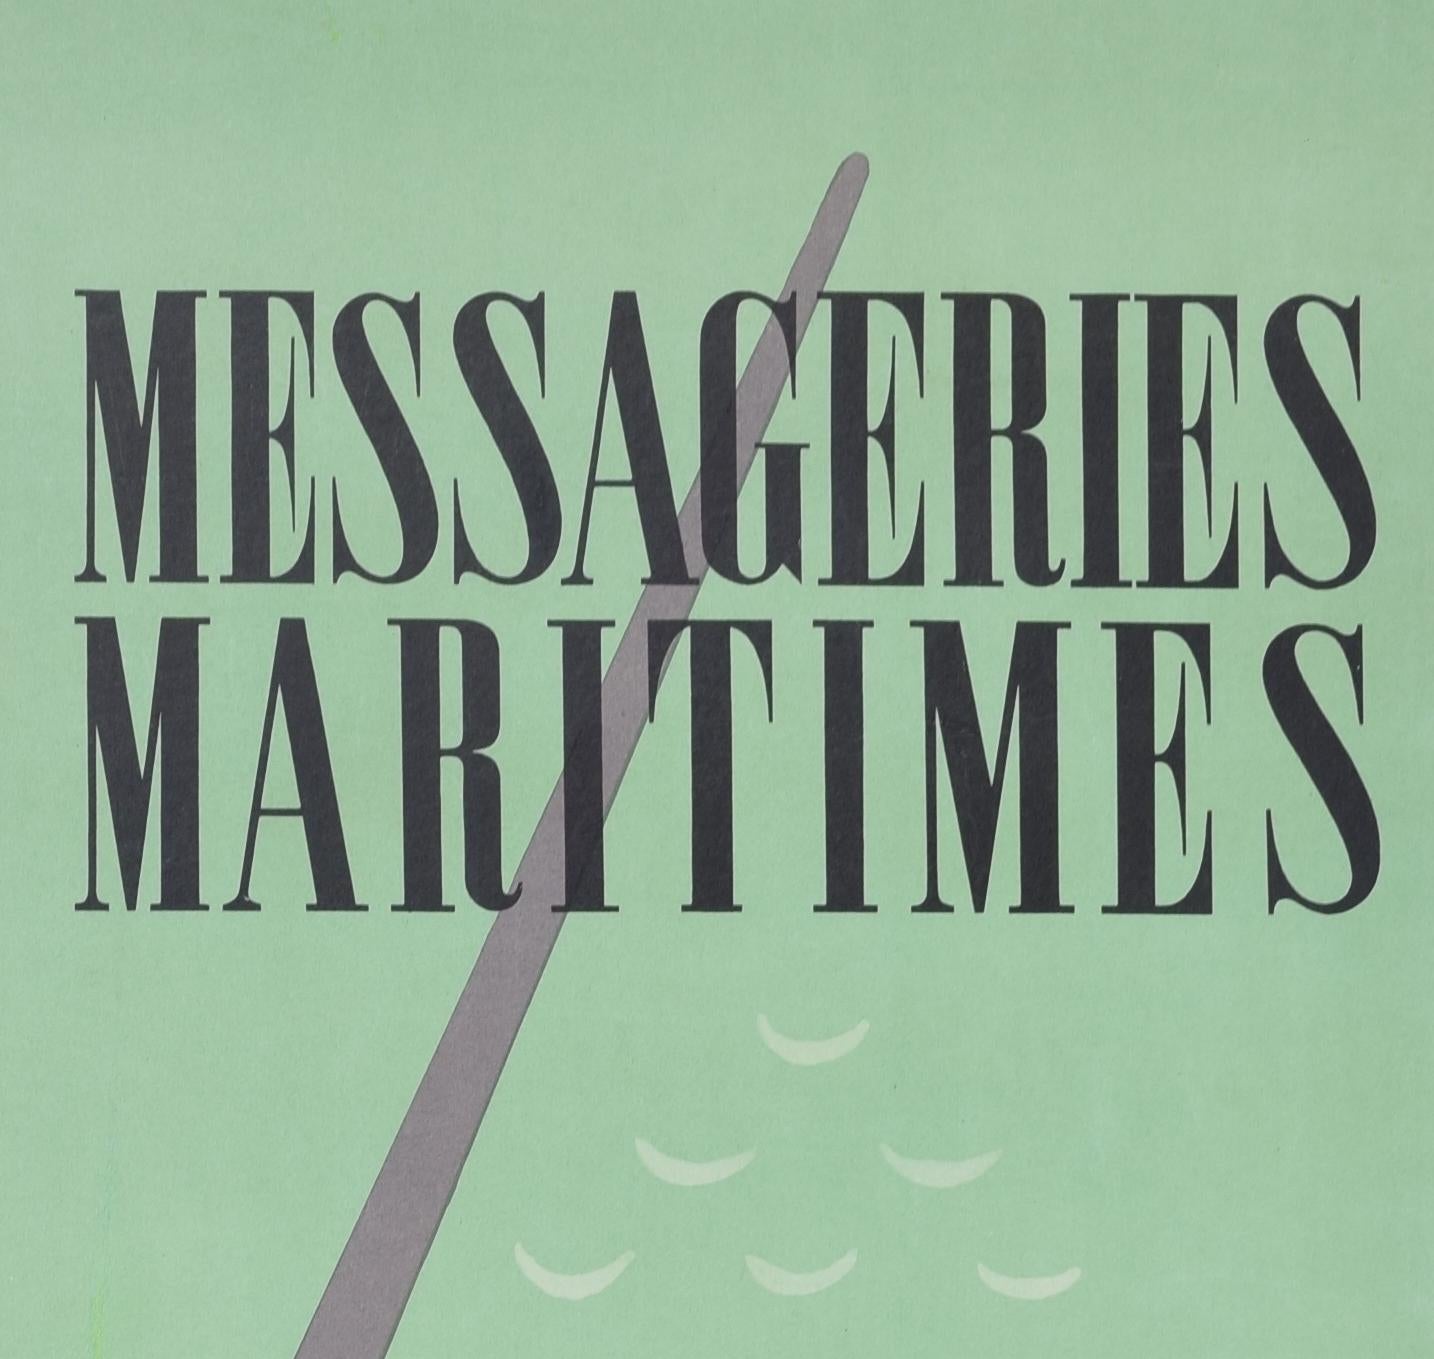 Messageries Maritimes - Union Francaise original vintage poster by Poulain For Sale 2